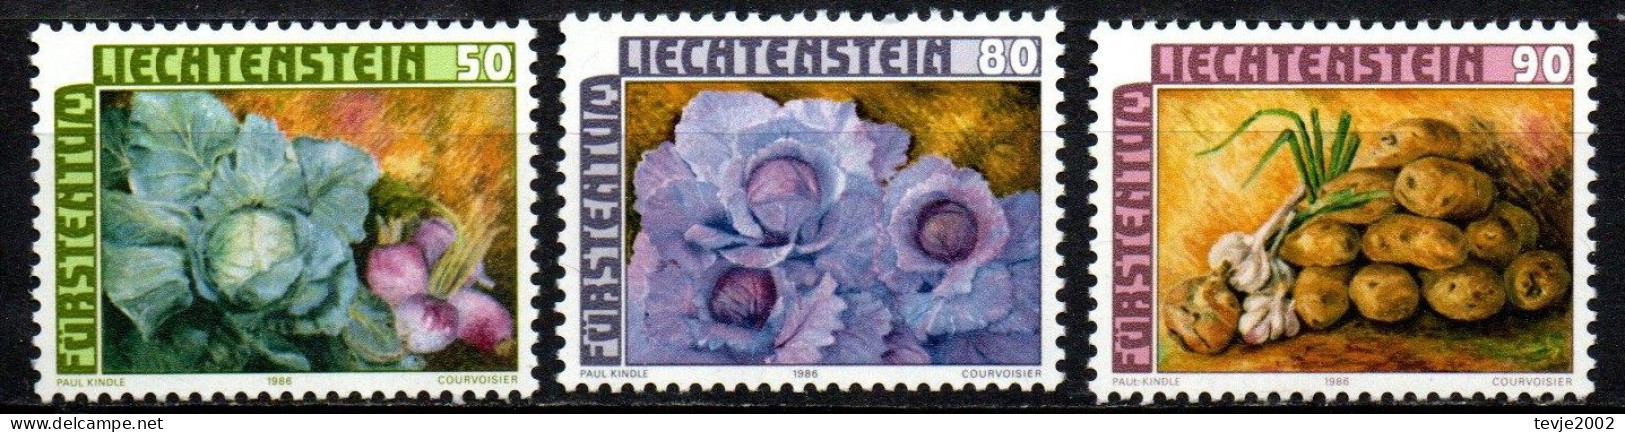 Liechtenstein 1986 - Mi.Nr. 904 - 906 - Postfrisch MNH - Gemüse Vegetables - Vegetables